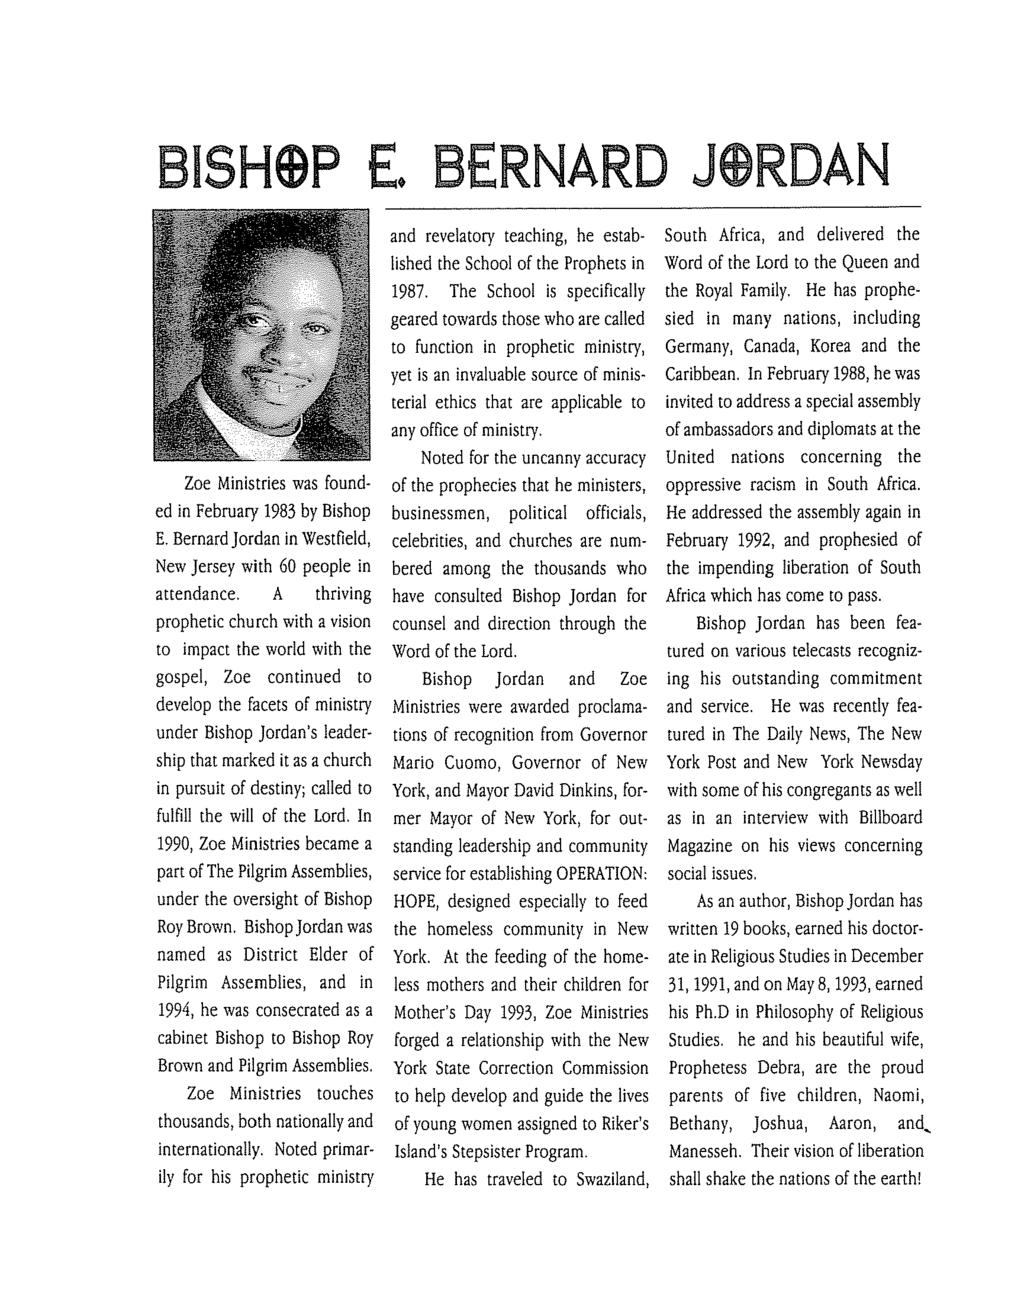 SHQP E, BERNARD J@WDAN Zoe Ministries was founded in February 1983 by Bishop E. Bernard Jordan in Westfield, New Jersey with 60 people in attendance.